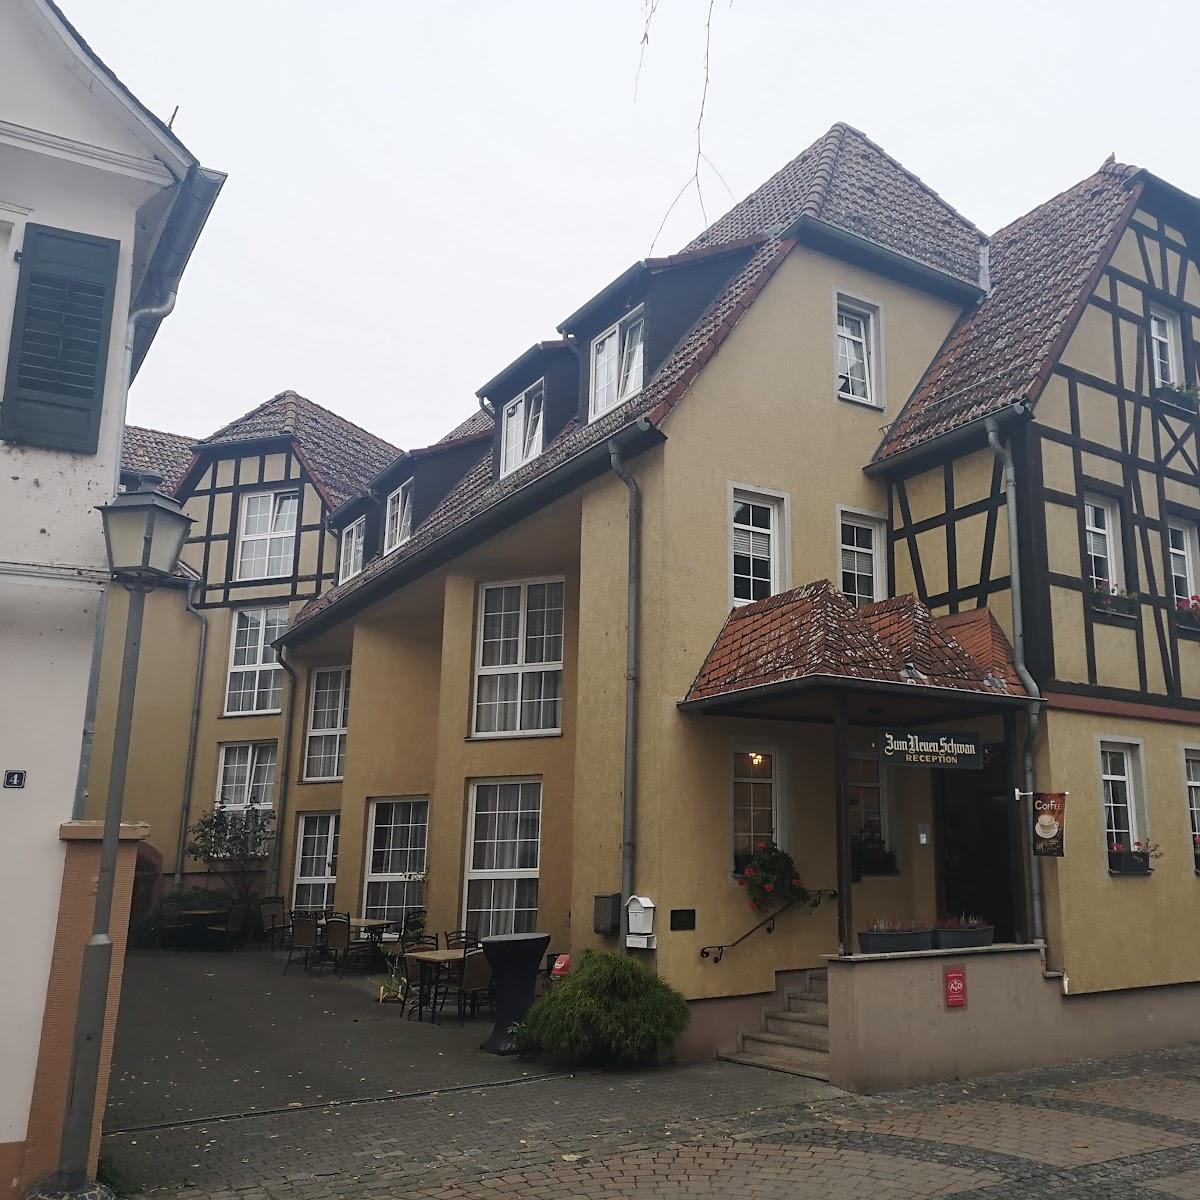 Restaurant "Hotel Zum Neuen Schwan" in Walluf